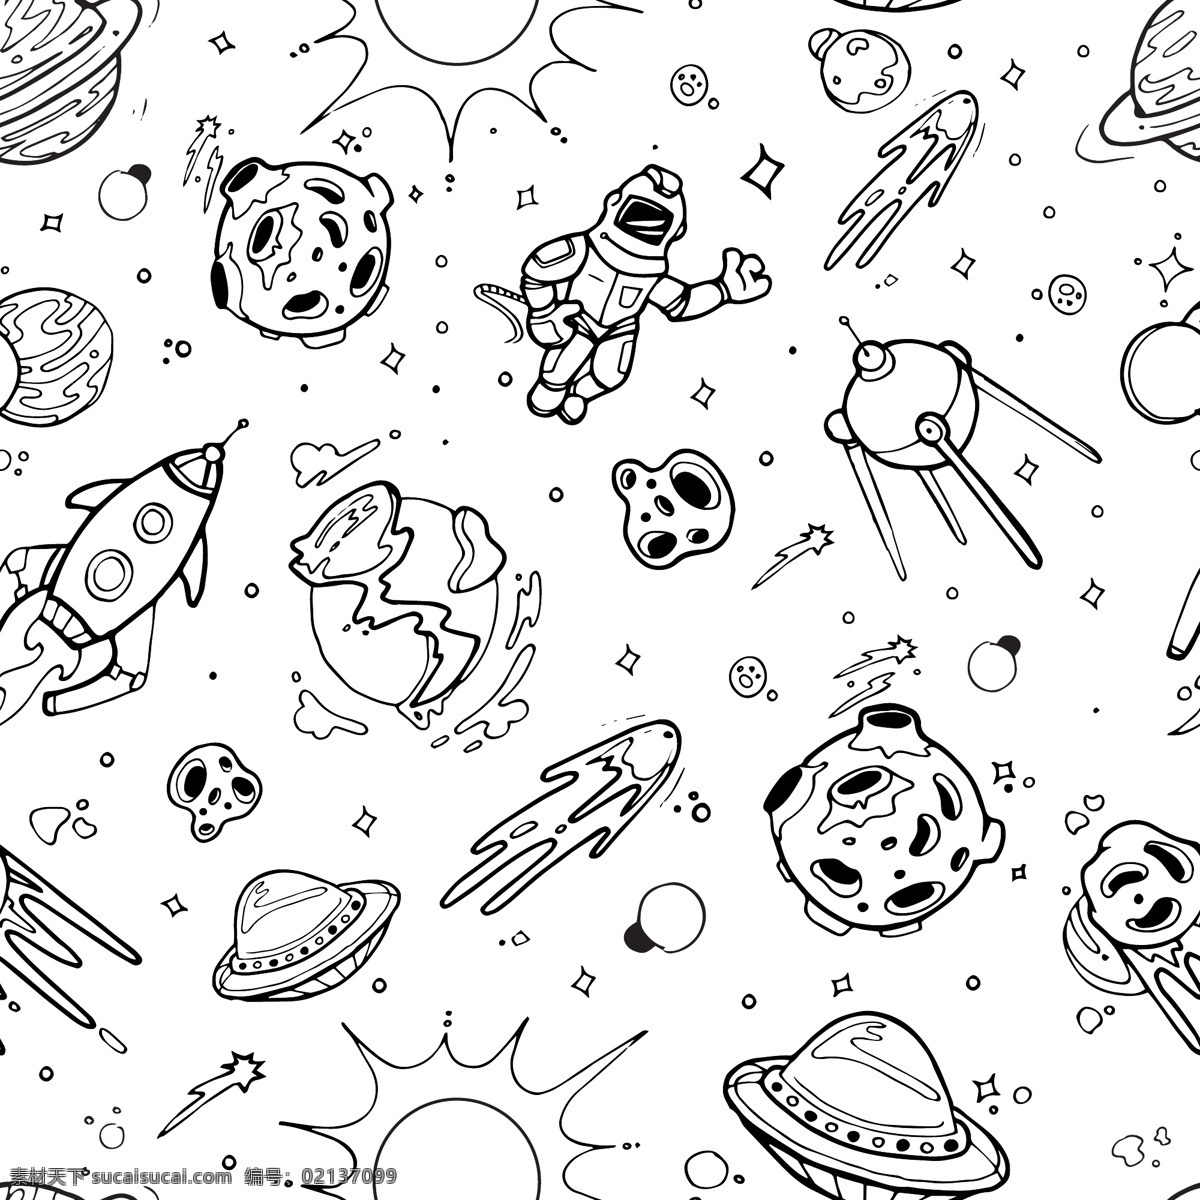 外 太空 宇航员 主题 插画 扁平化 矢量插画 创意装饰 图案设计 宇航员主题 外星 旅行 星空 飞船 插画图案 儿童卡通 宇宙 太空探索 星球 星体 动漫动画